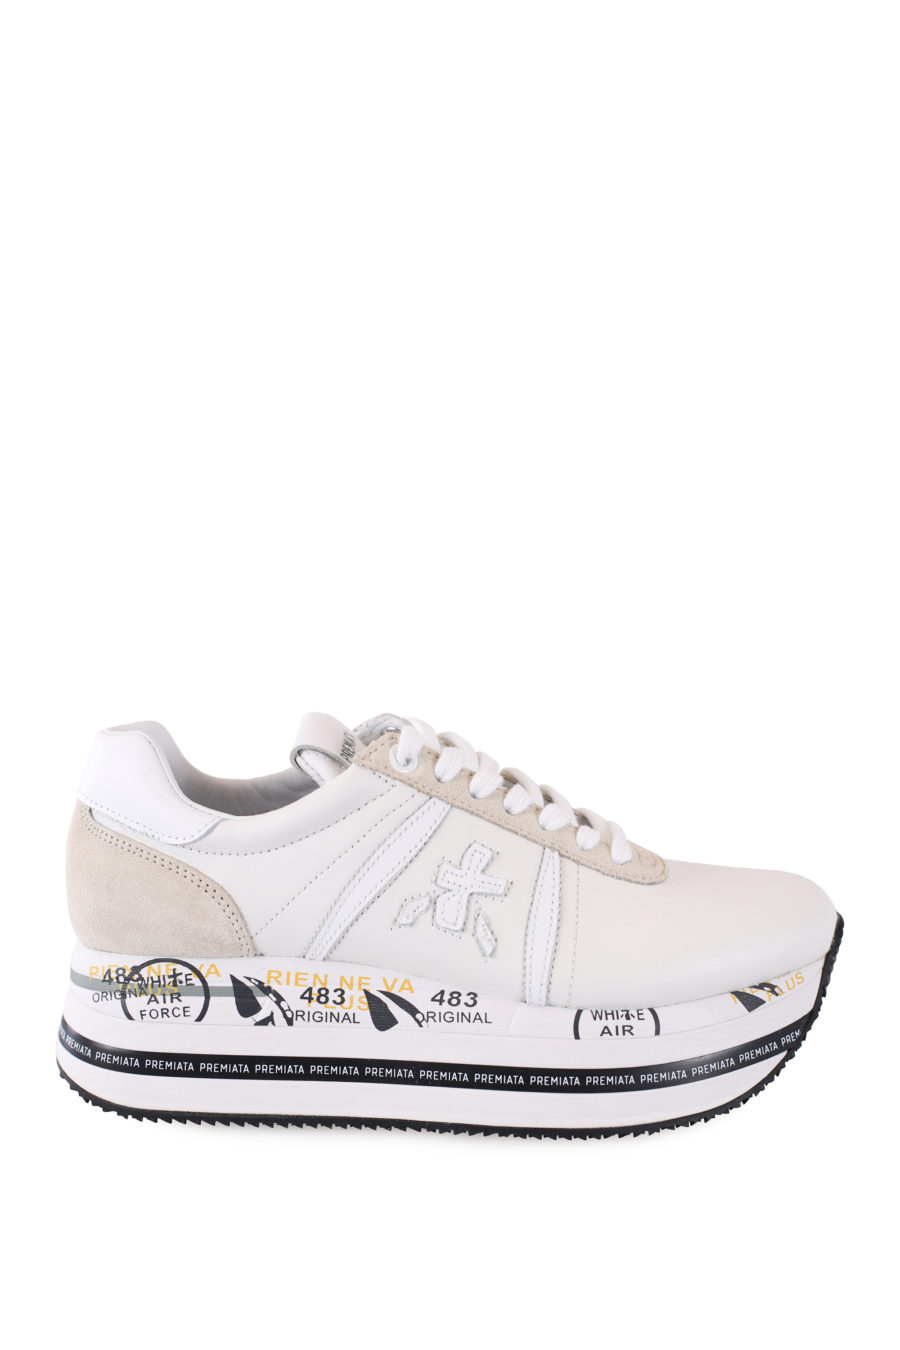 Zapatillas blancas y beige con plataforma "Beth" - IMG 7033